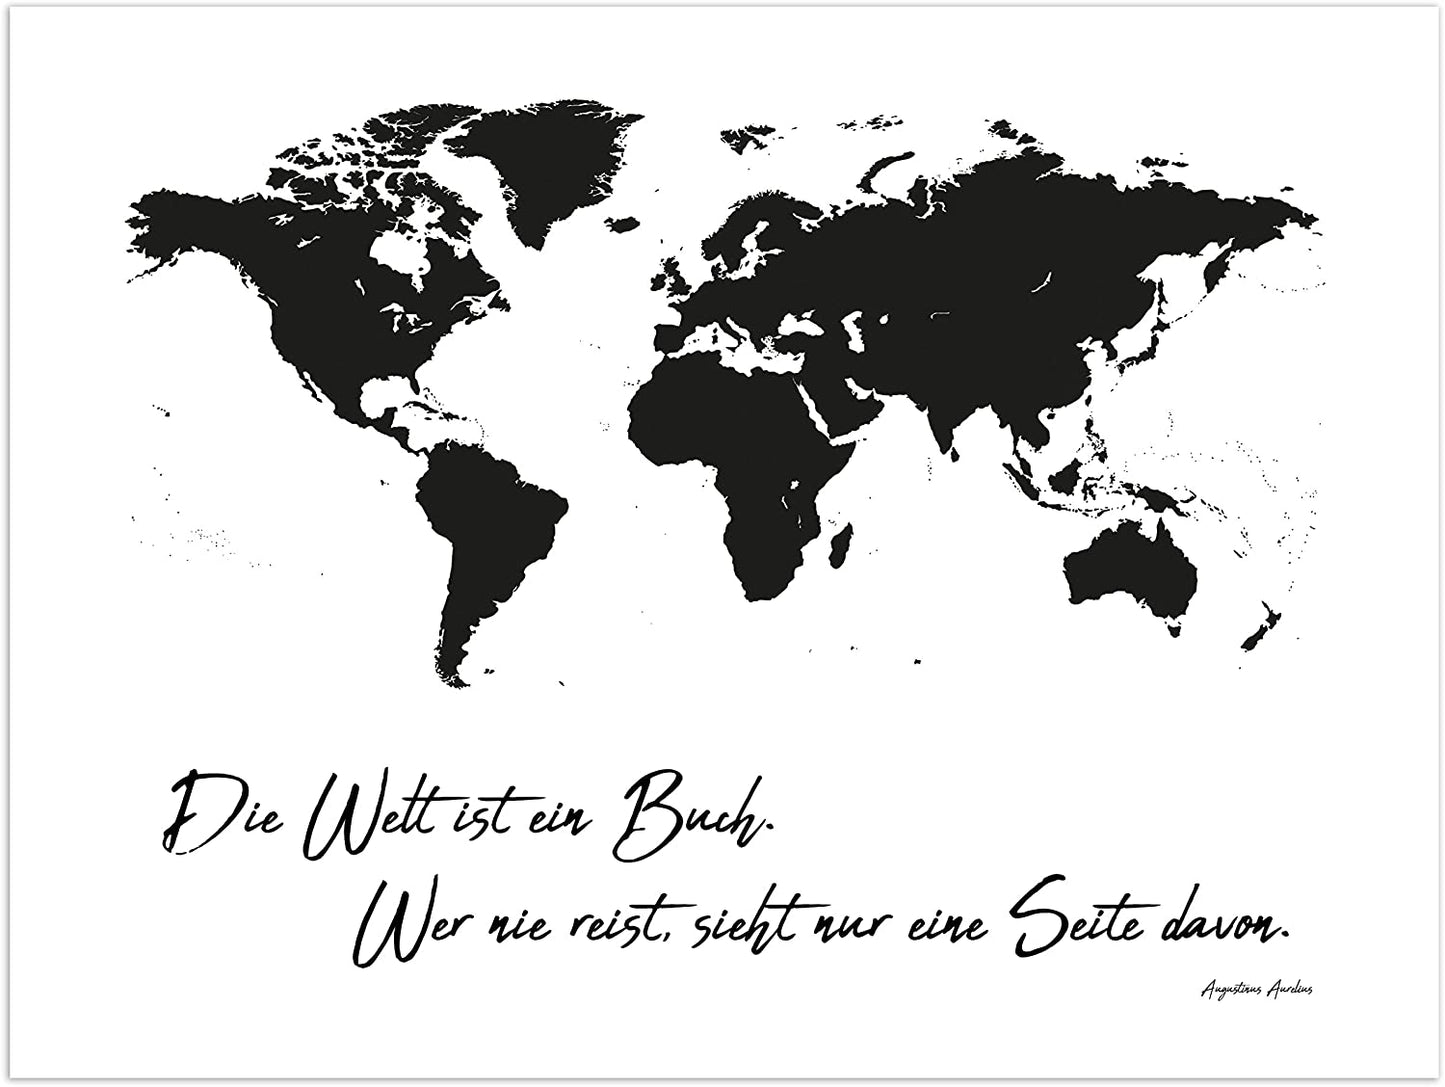 Poster Weltkarte "Die Welt ist ein Buch. Wer nie reist, sieht nur eine Seite davon", ungerahmt 40 cm x 30 cm, Dekoration, Kunstdruck, Wandbild, Fineartprint, Wandposter (Ungerahmt 40 cm x 30 cm)